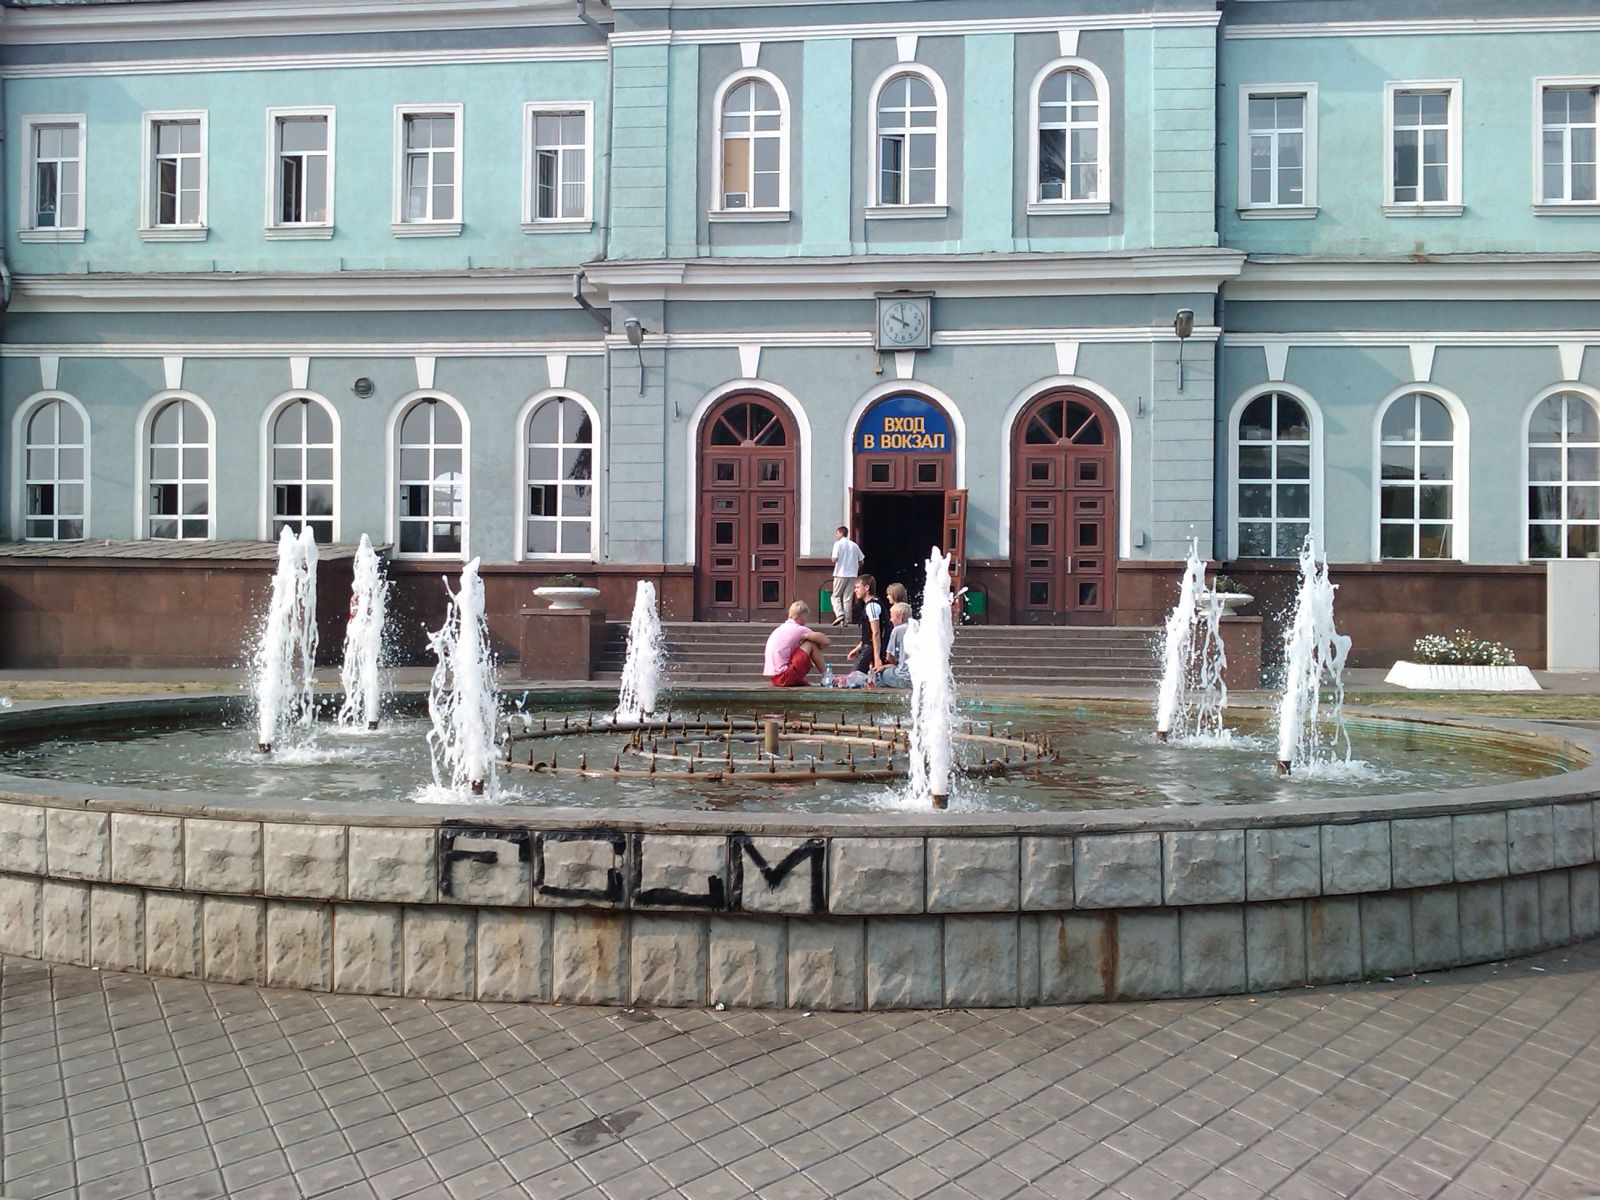 Мичуринск уральский вокзал